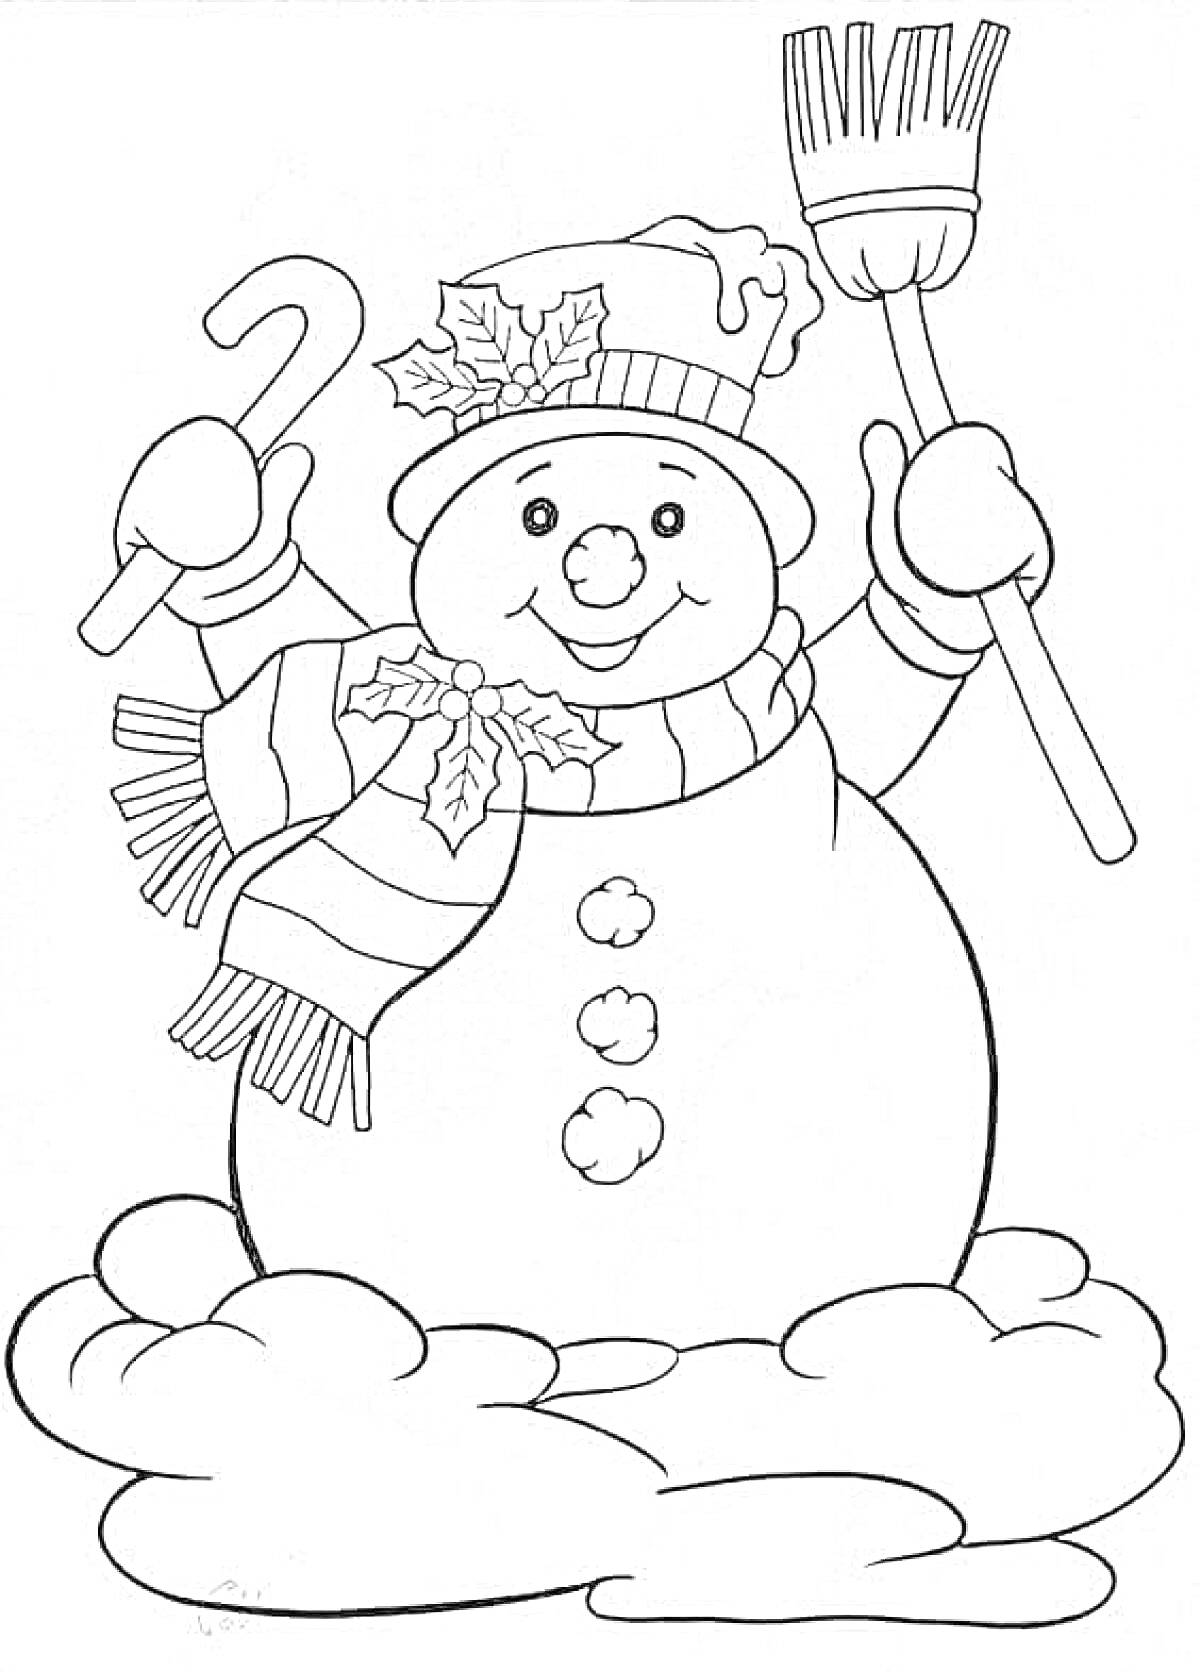 Раскраска Снеговик в шапке и шарфе с метлой и леденцом на снегу